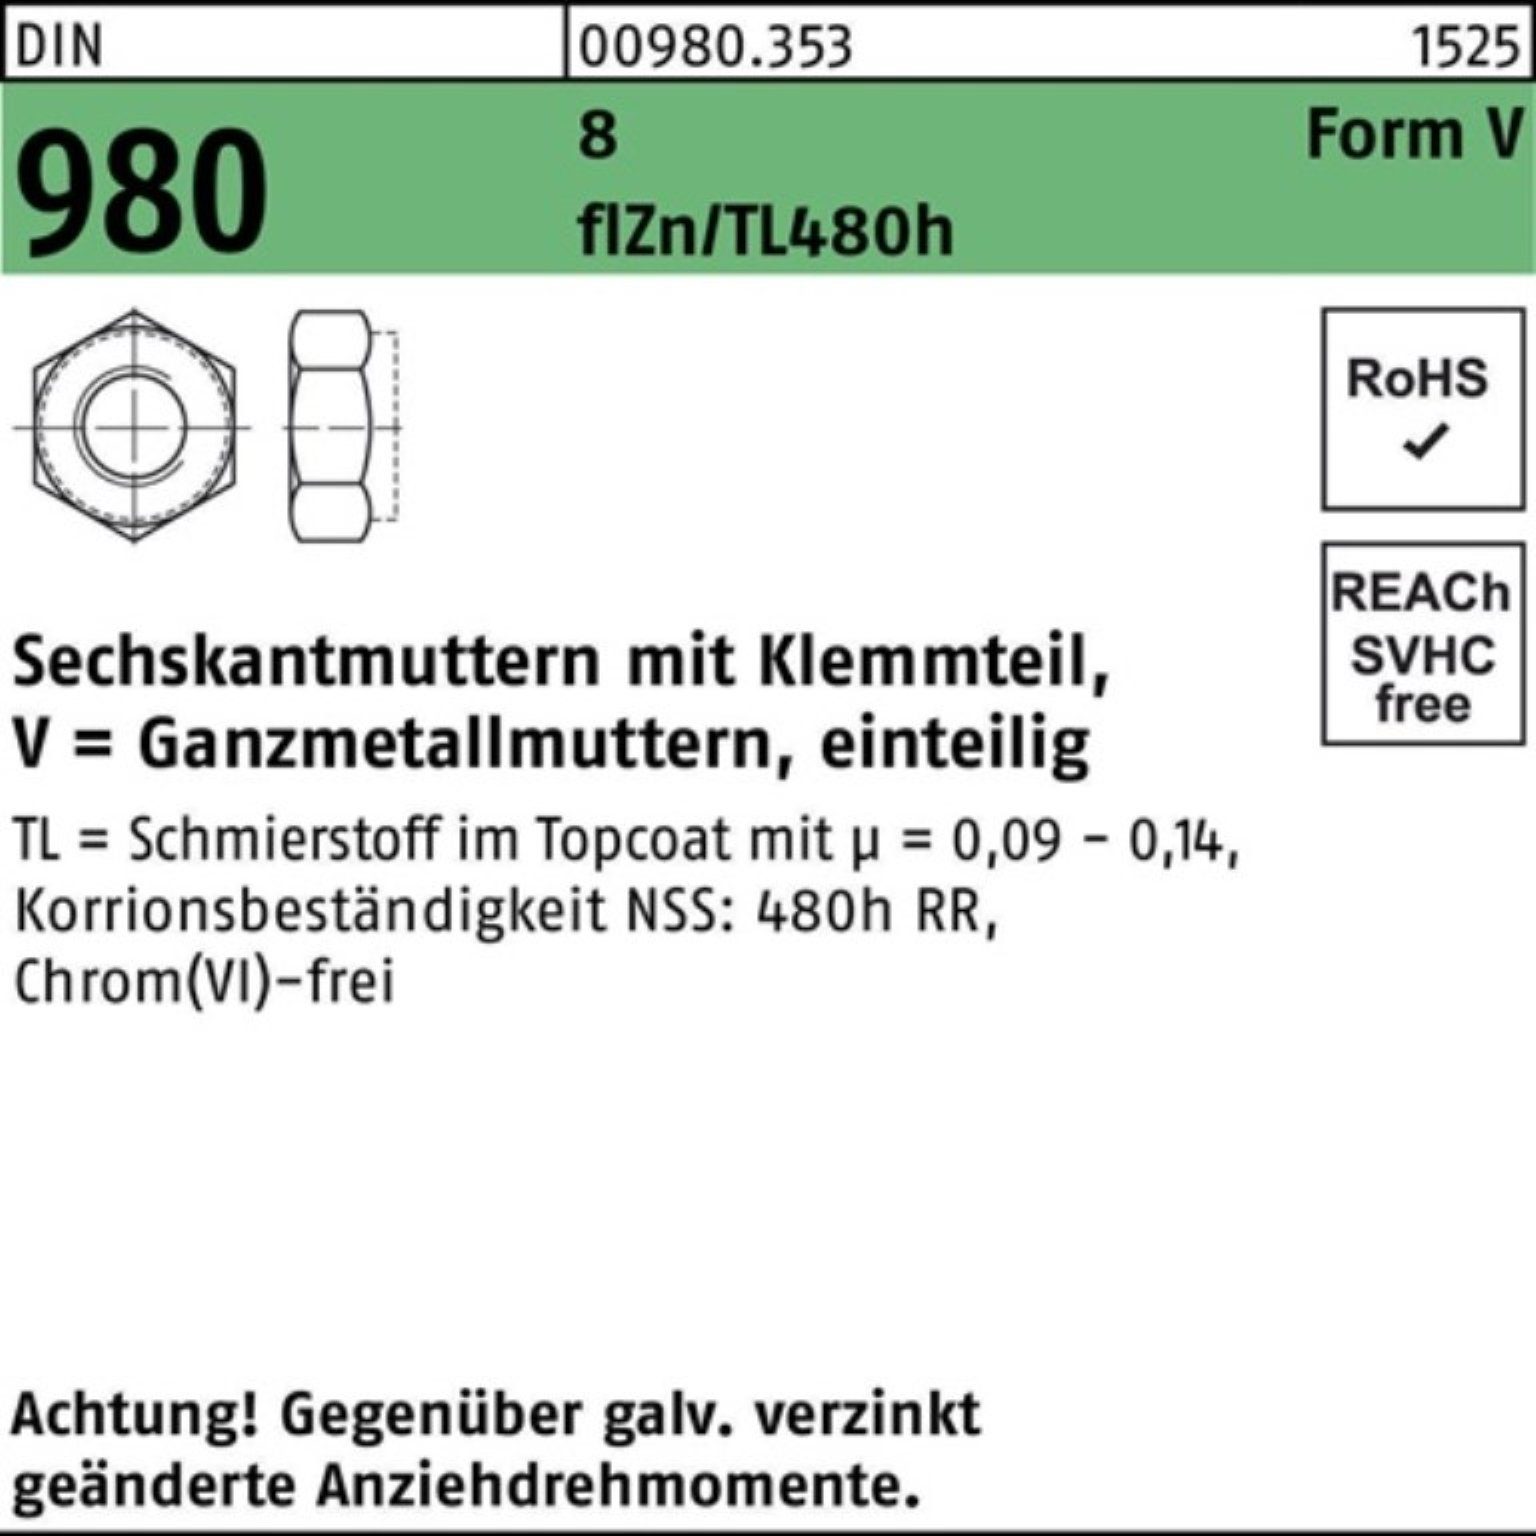 Sechskantmutter VM DIN 16 Pack Reyher 8 Klemmteil 980 Muttern 100er zinklamellenbes.